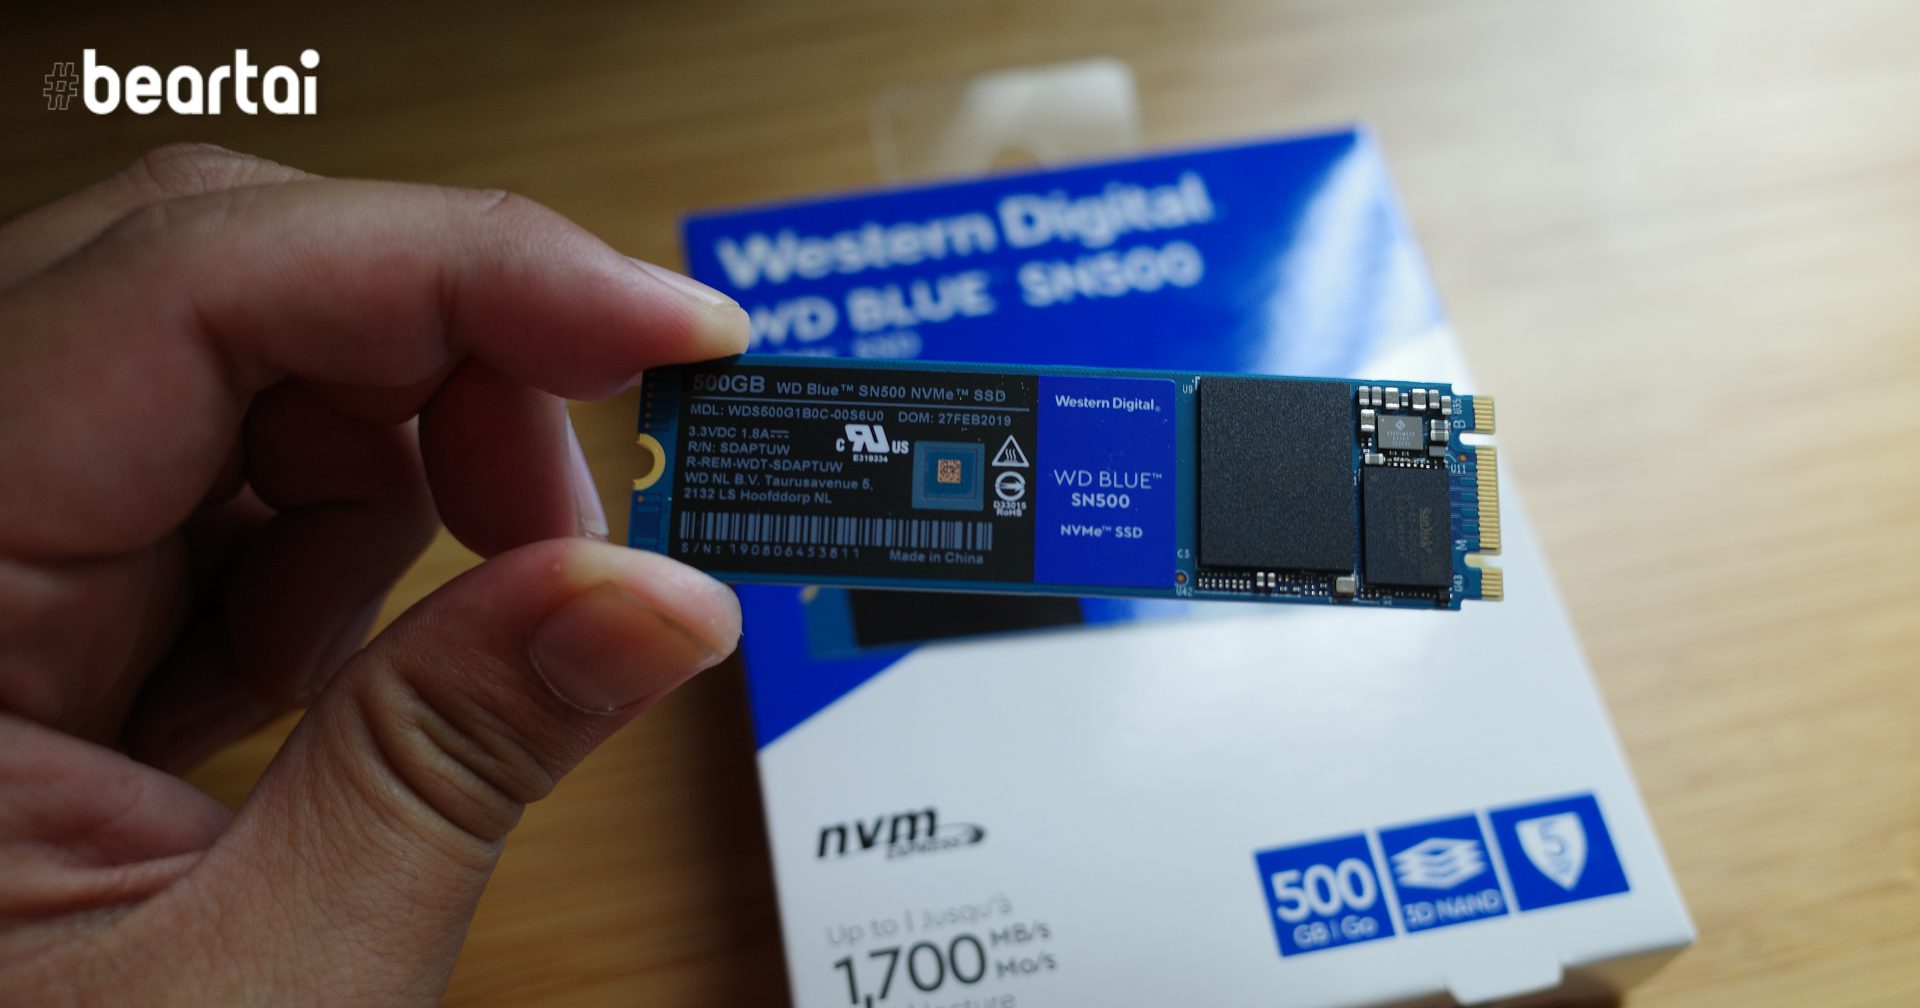 รีวิว WD Blue SN500 เมื่อ SSD ความเร็วโอเค ราคาถูกมว้ากจนไม่ควรซื้อฮาร์ดดิสก์เป็นไดรฟ์หลักแล้ว!